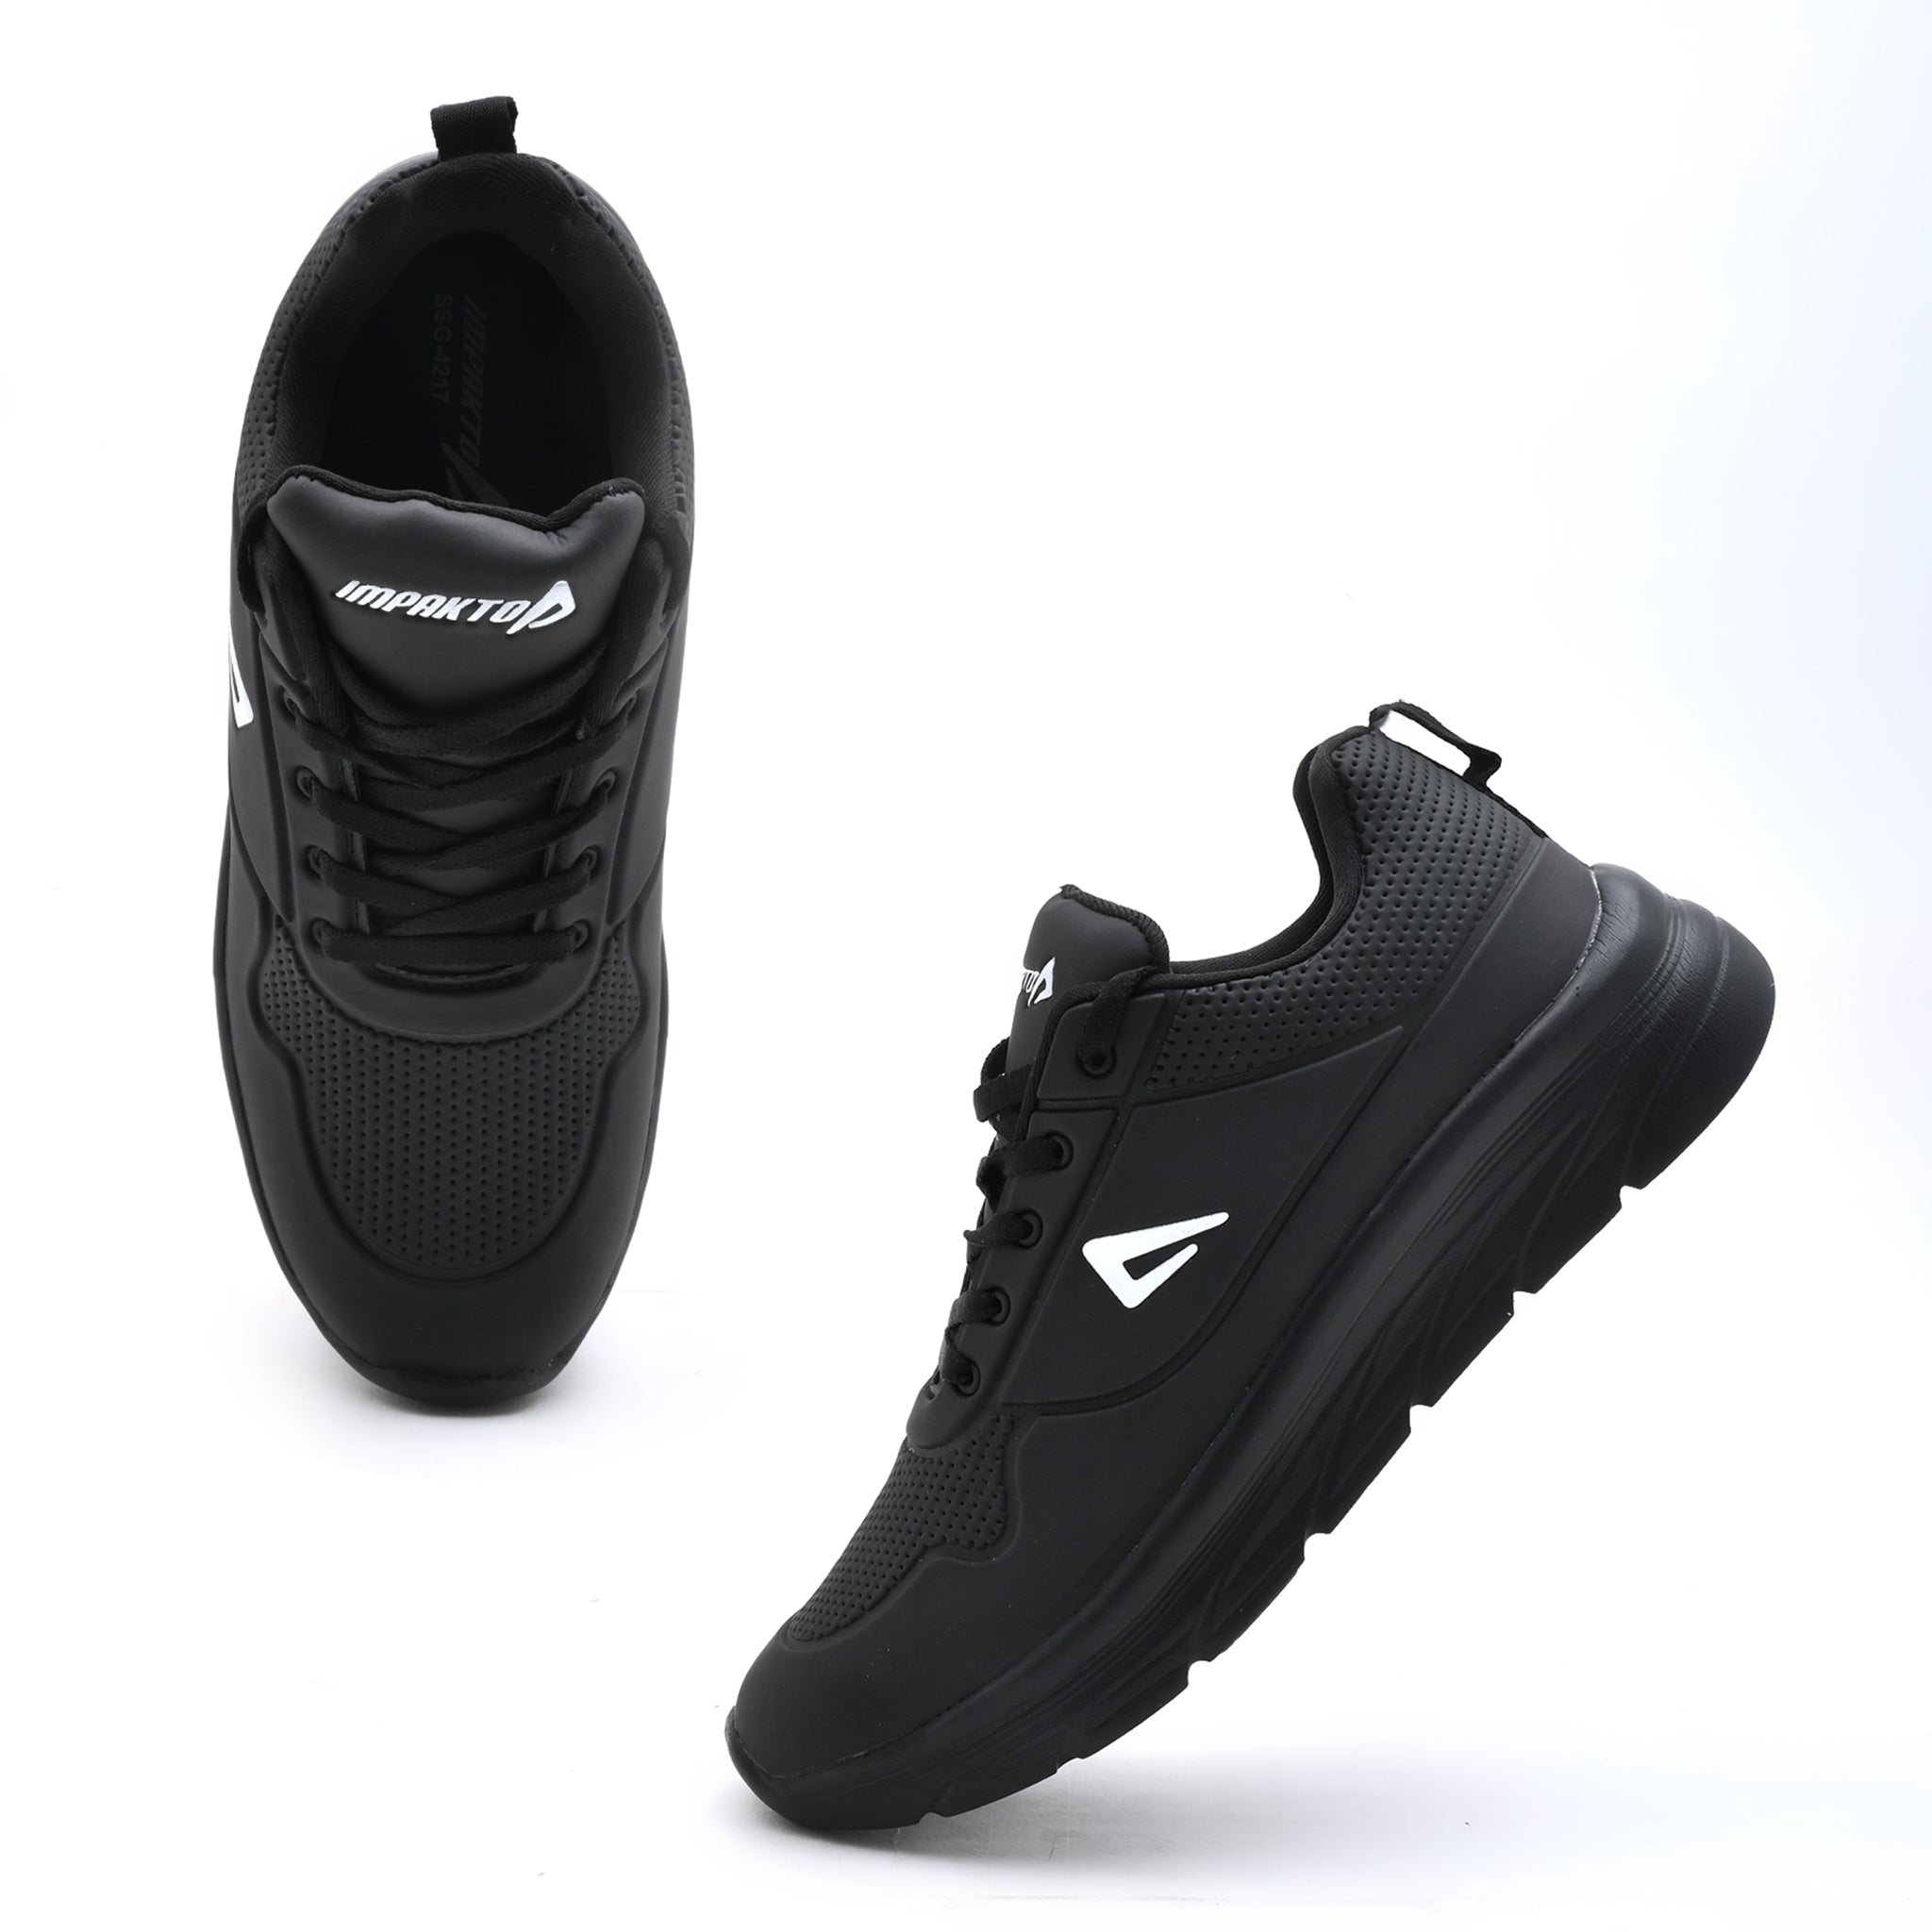 Impakto  Disruptor  Men's  Black Walking Shoes